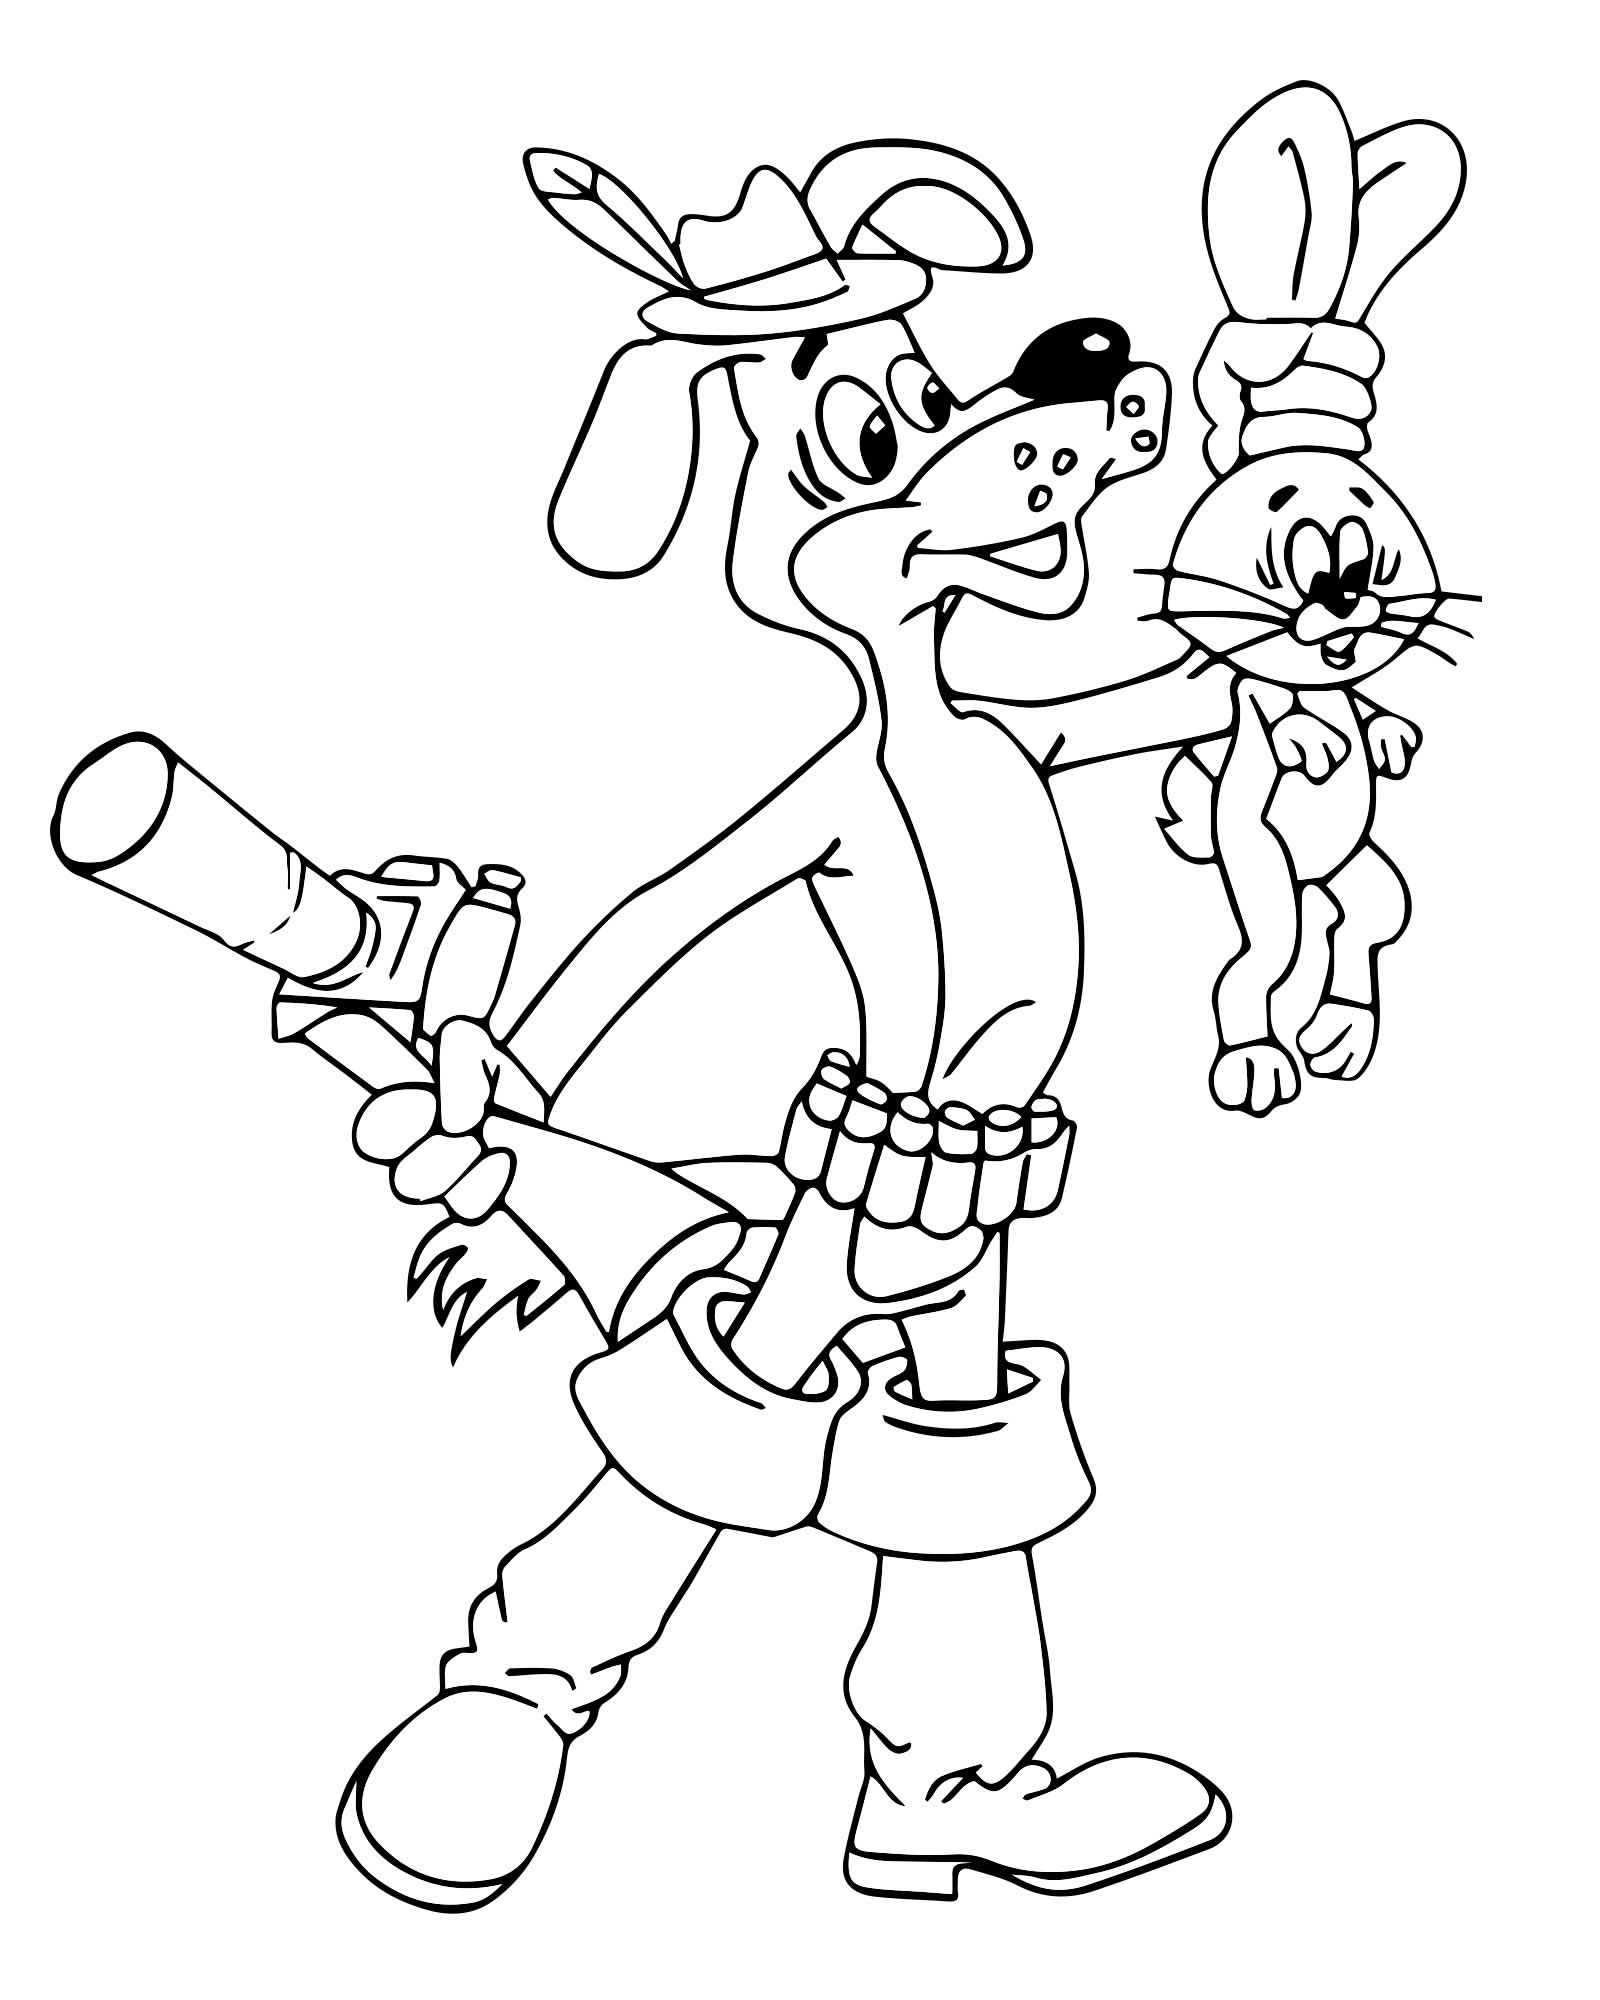 Шарик и заяц из Простоквашино раскраска для детей